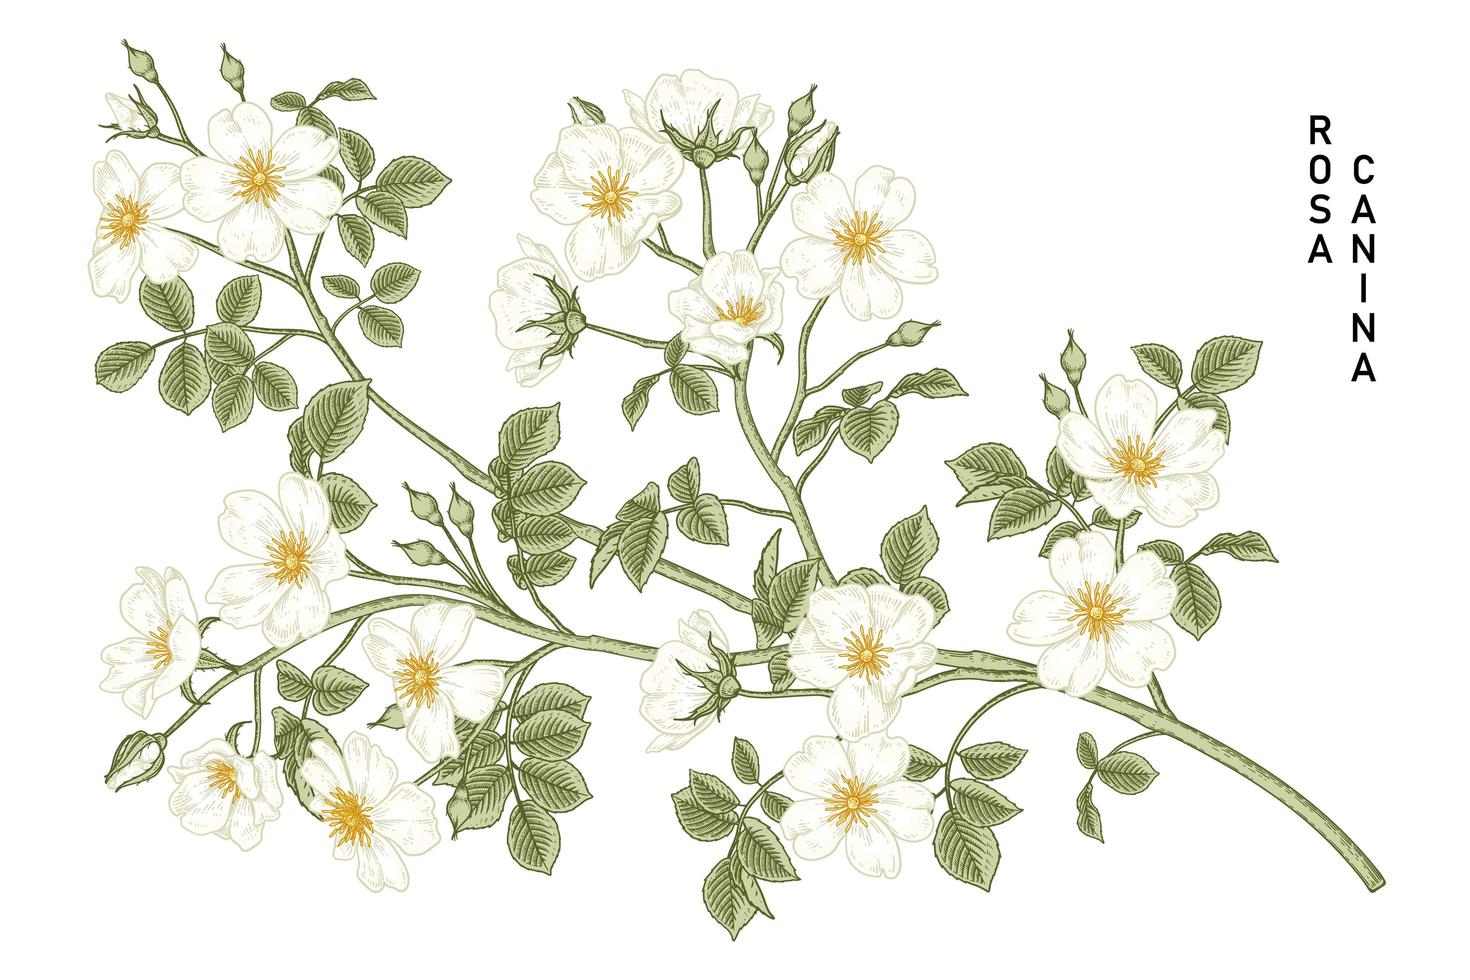 Zweig der weißen Hundrose oder Rosa canina mit der Hand und den gezeichneten botanischen Illustrationen der Blume und der Blätter vektor